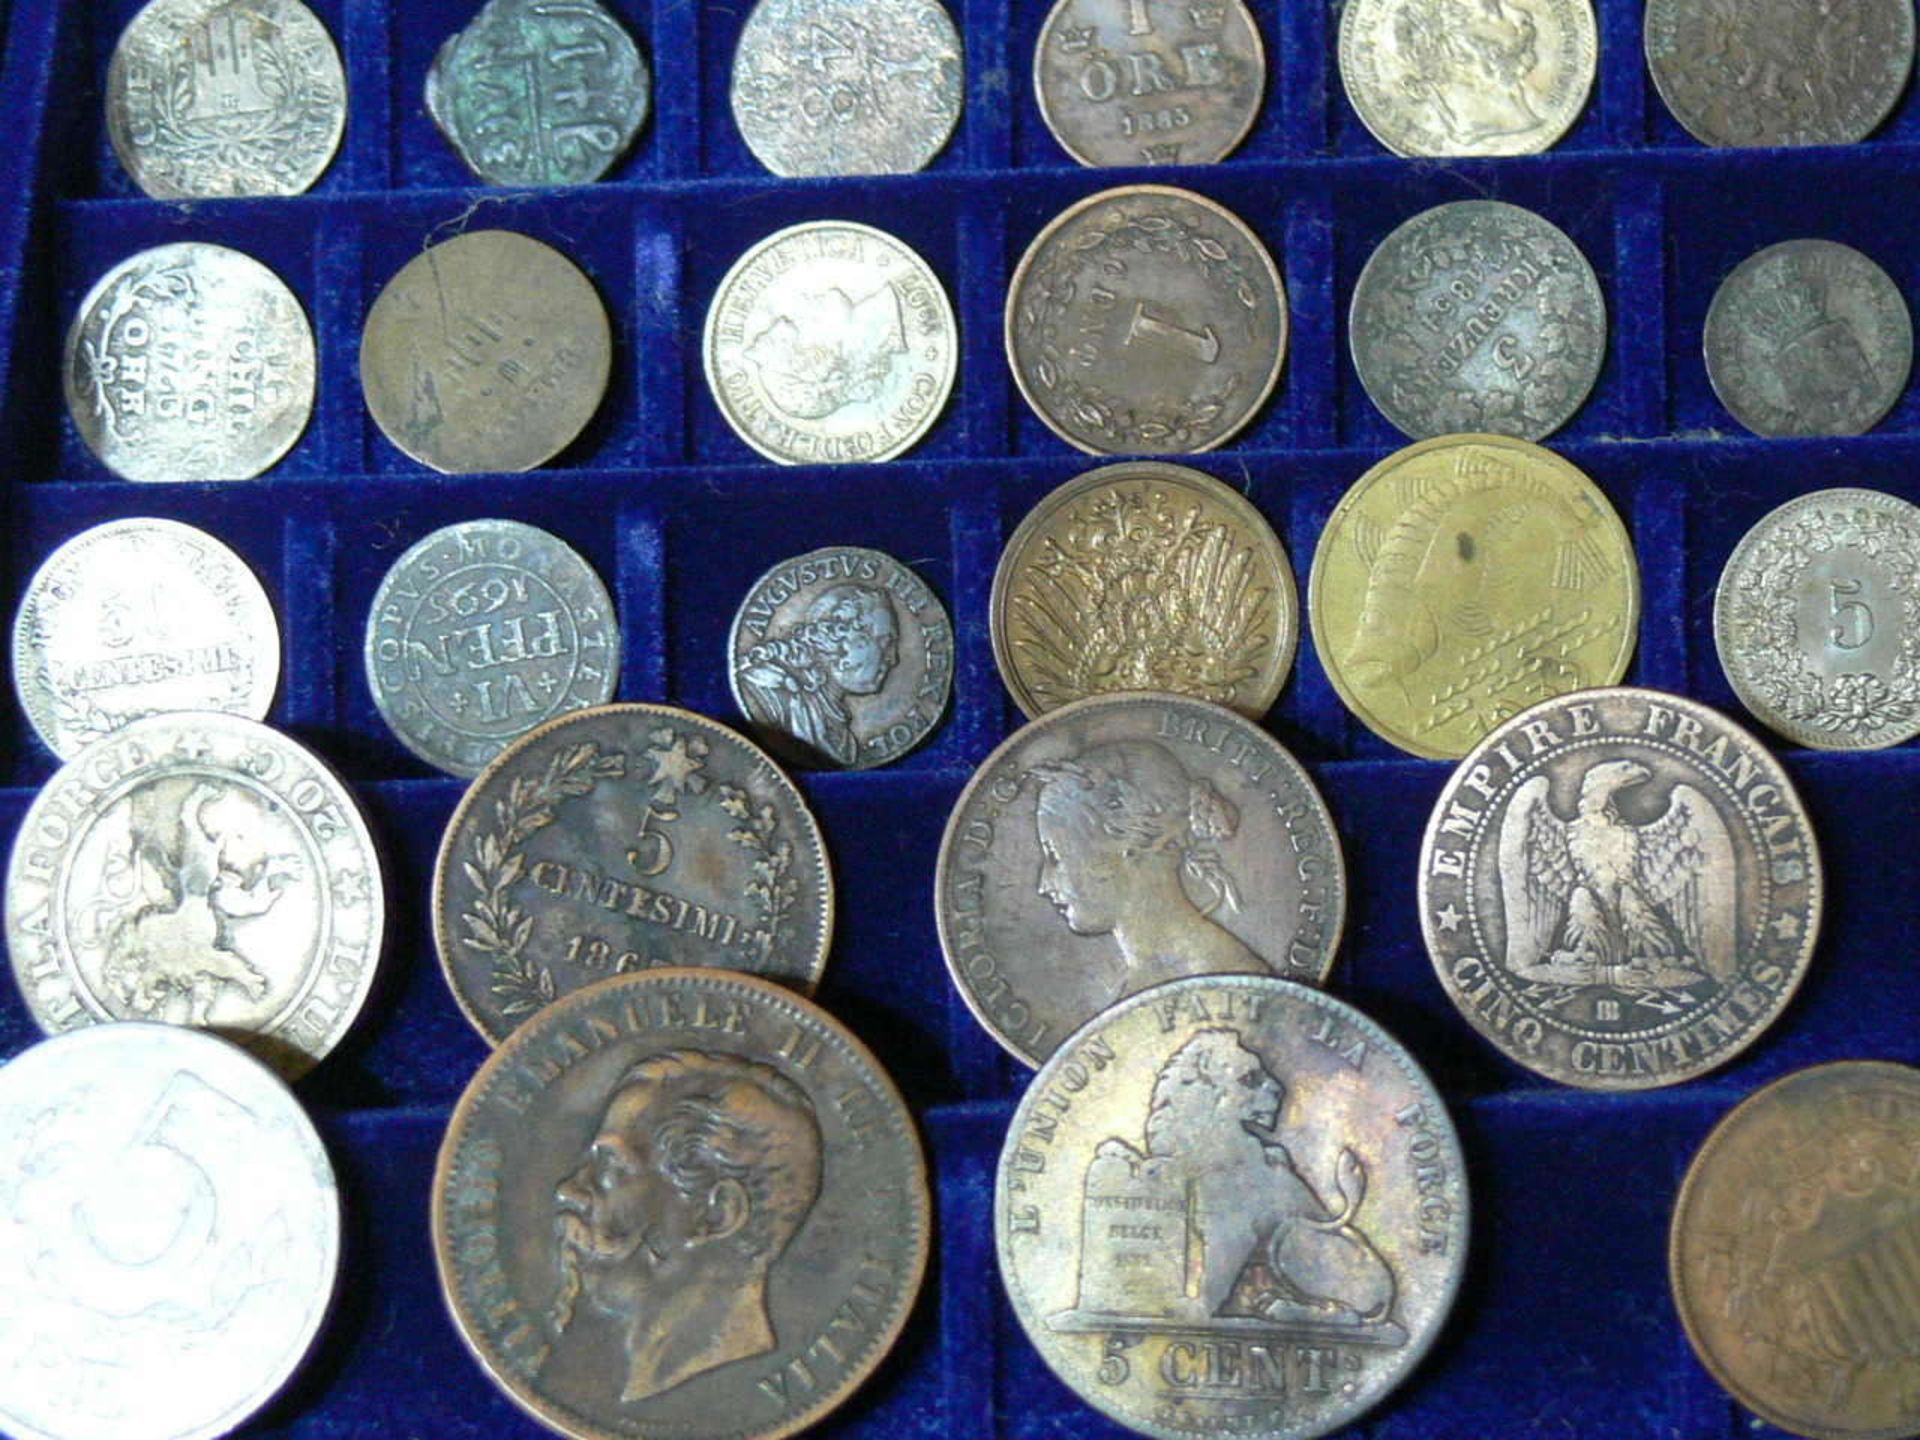 Großes Lot alte Münzen aus aller Welt aus dem 17. bis 19. Jahrhundert. Über 100 Stück. Darunter u. - Bild 3 aus 6